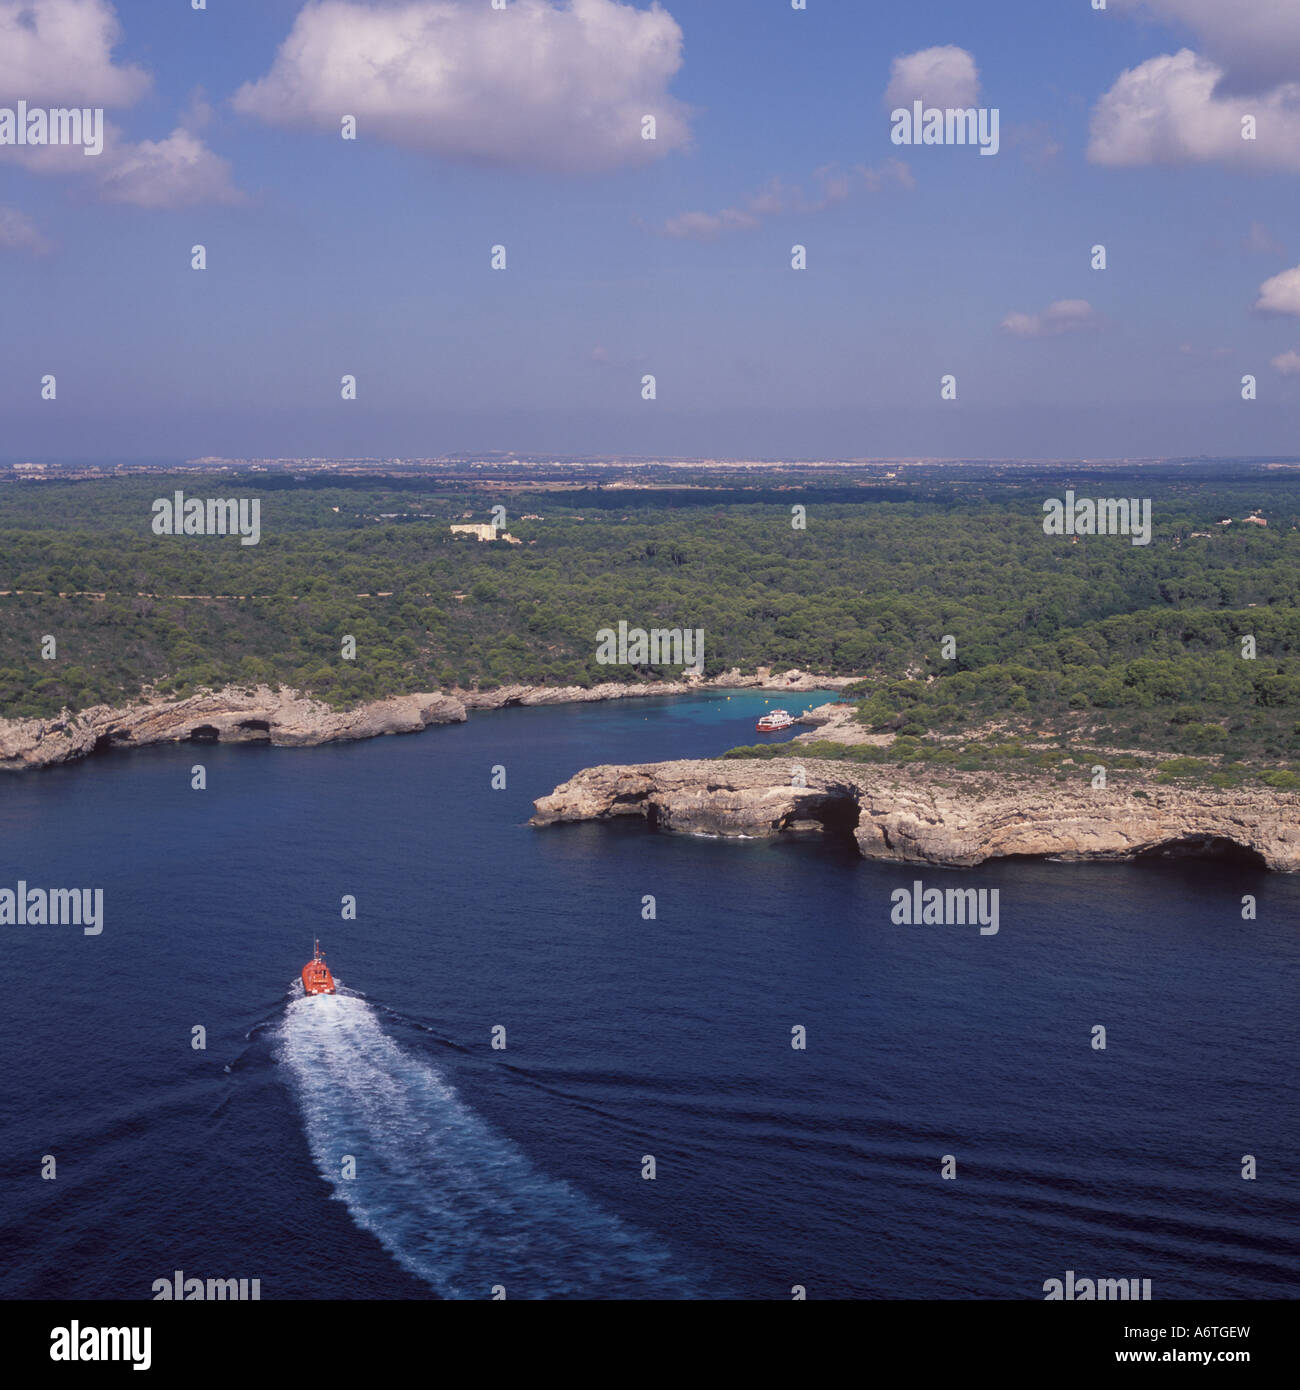 Vista aérea - buque Guardacostas acercando a una cala rocosa remoto / bay / anchorage - Sur Oeste de Menorca / Menorca, Baleares Islan Foto de stock